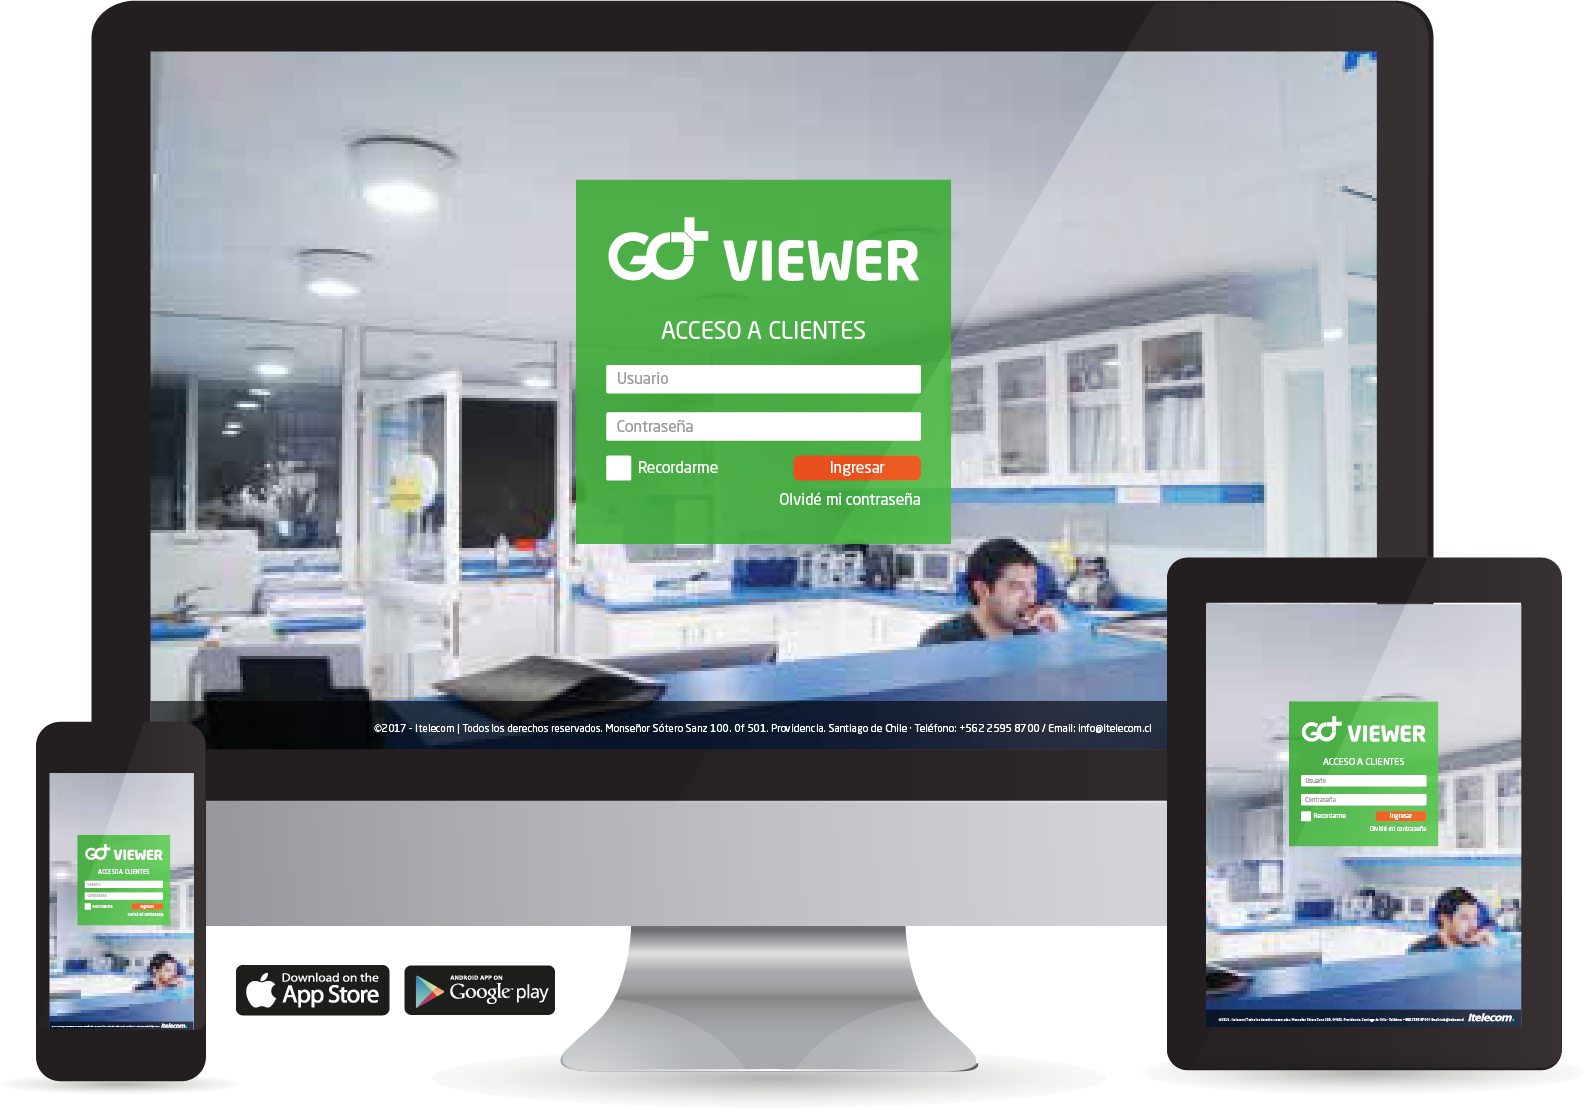 GO viewer go+ itelecom Eficiencia energética